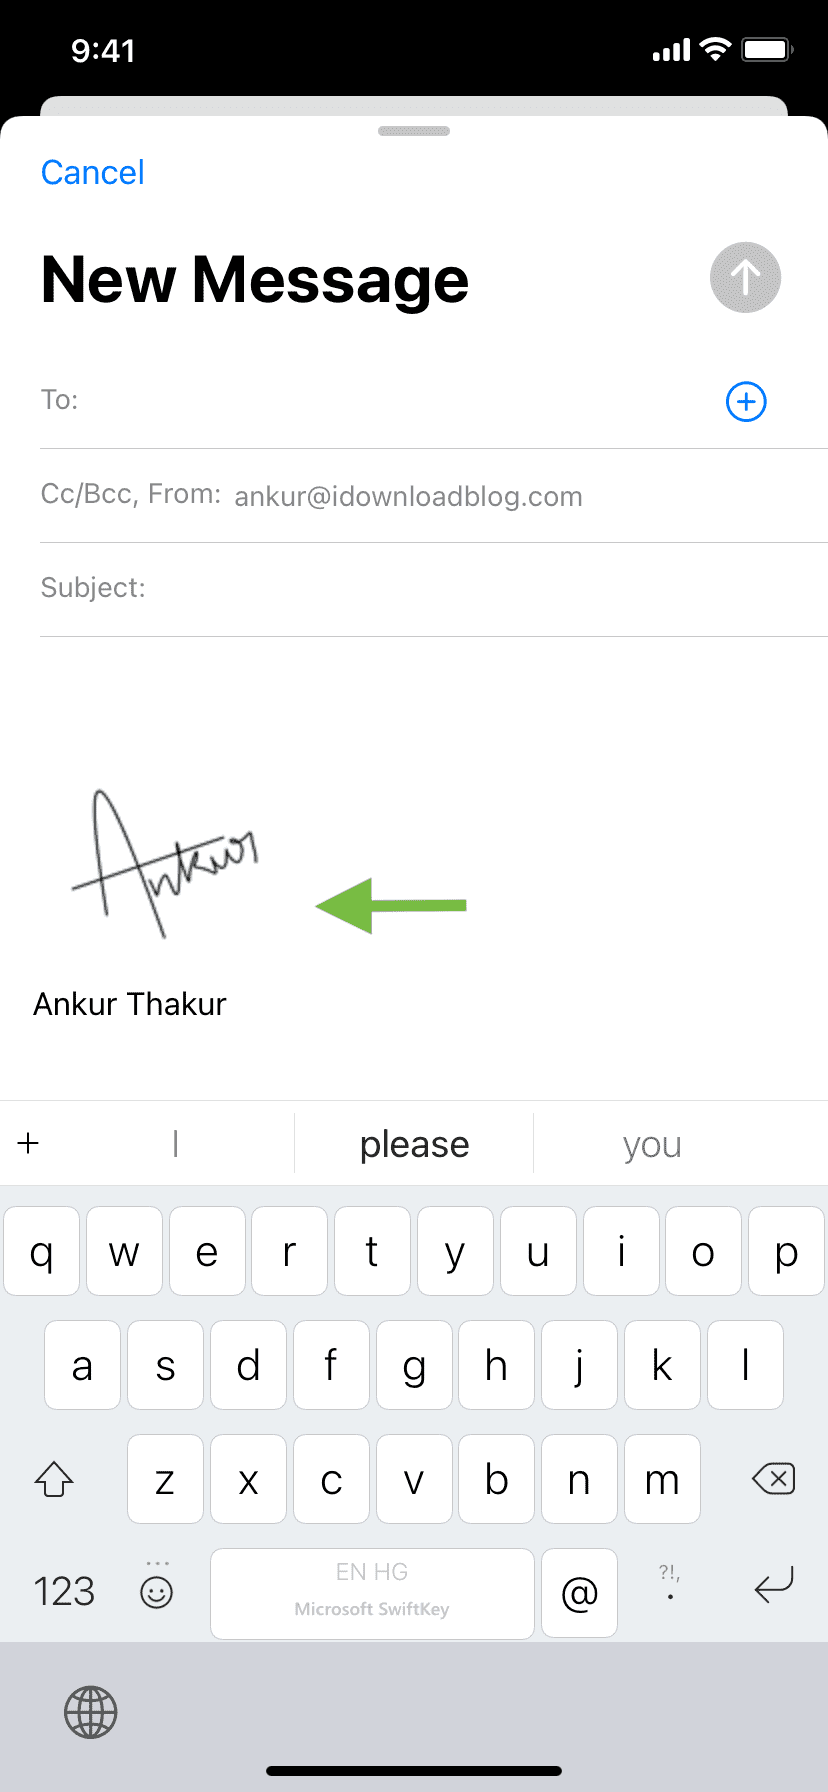 Handwritten email signature in iOS Mail app